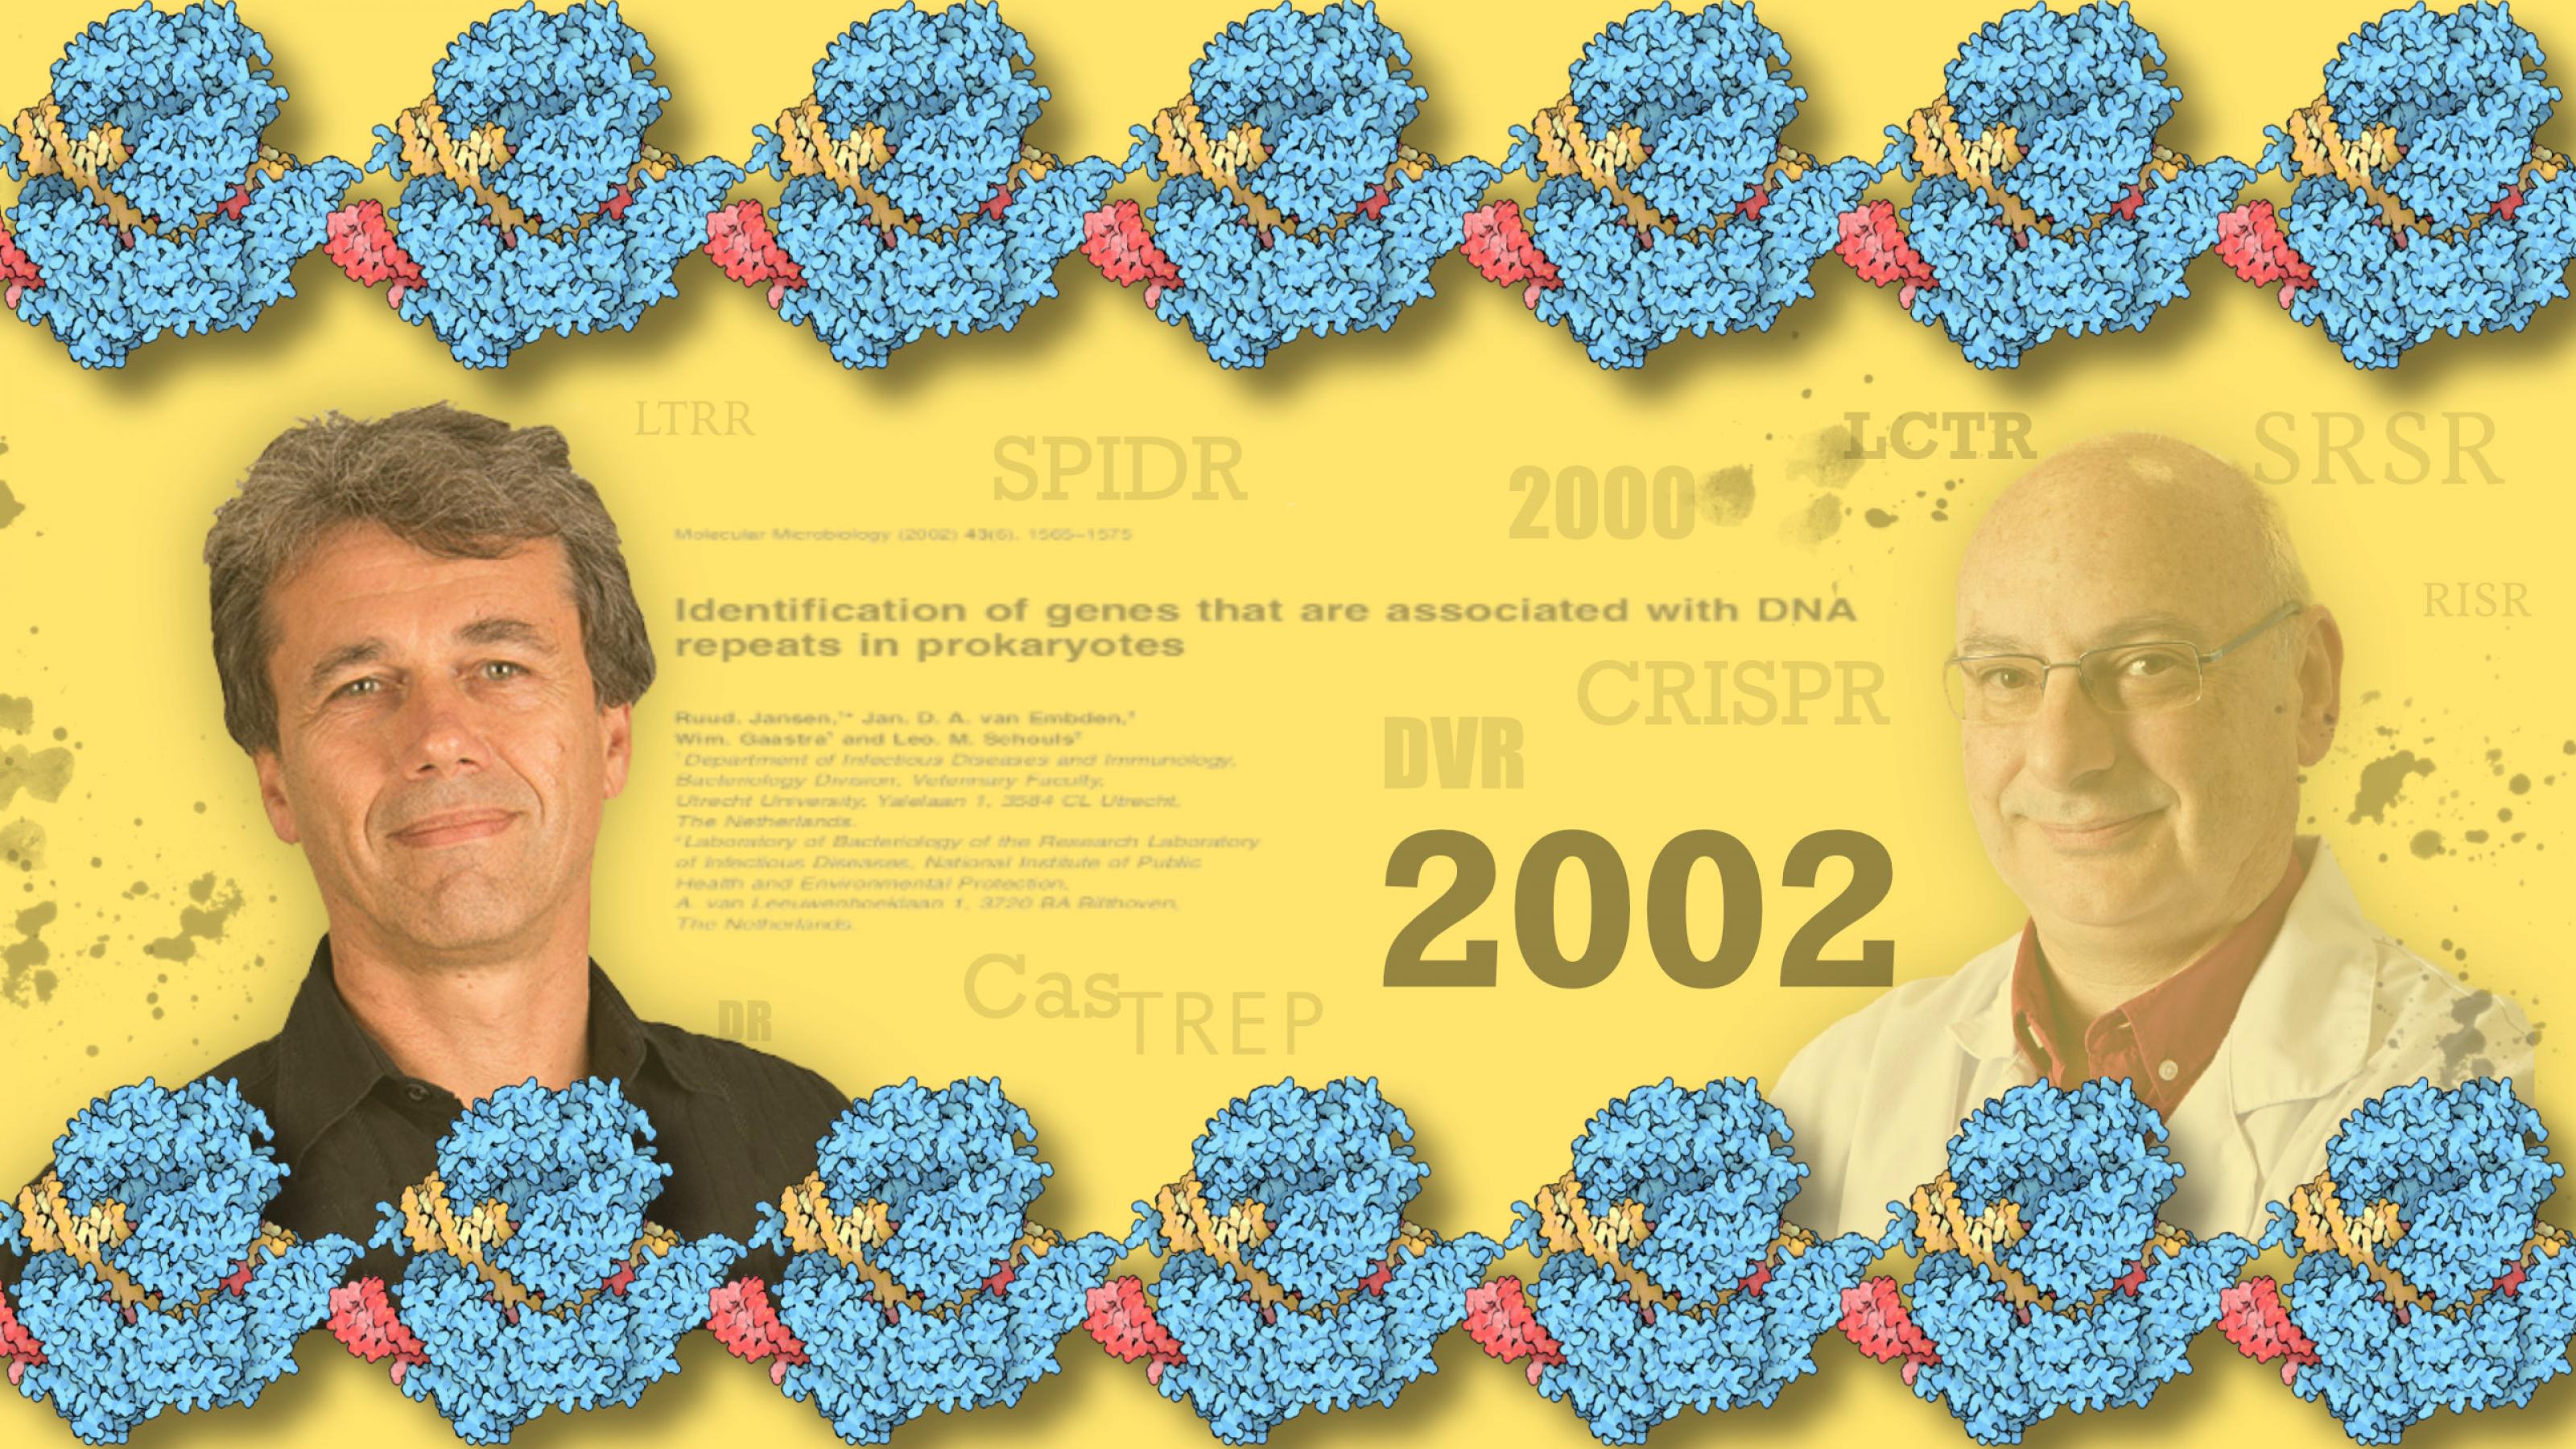 Portraits von Ruud Jansen (links) und Francisco Mojica (rechts) vor dem Titel des Artikels, in dem der Name CRISPR/Cas erstmals benutzt wurde, umgeben von vielen verschiedenen Abkürzungen, die vor CRISPR verwendet wurden, der Zahl 2002,dem Jahr in dem der Artikel erschien, umrandet von Grafiken des Cas9 Moleküls.